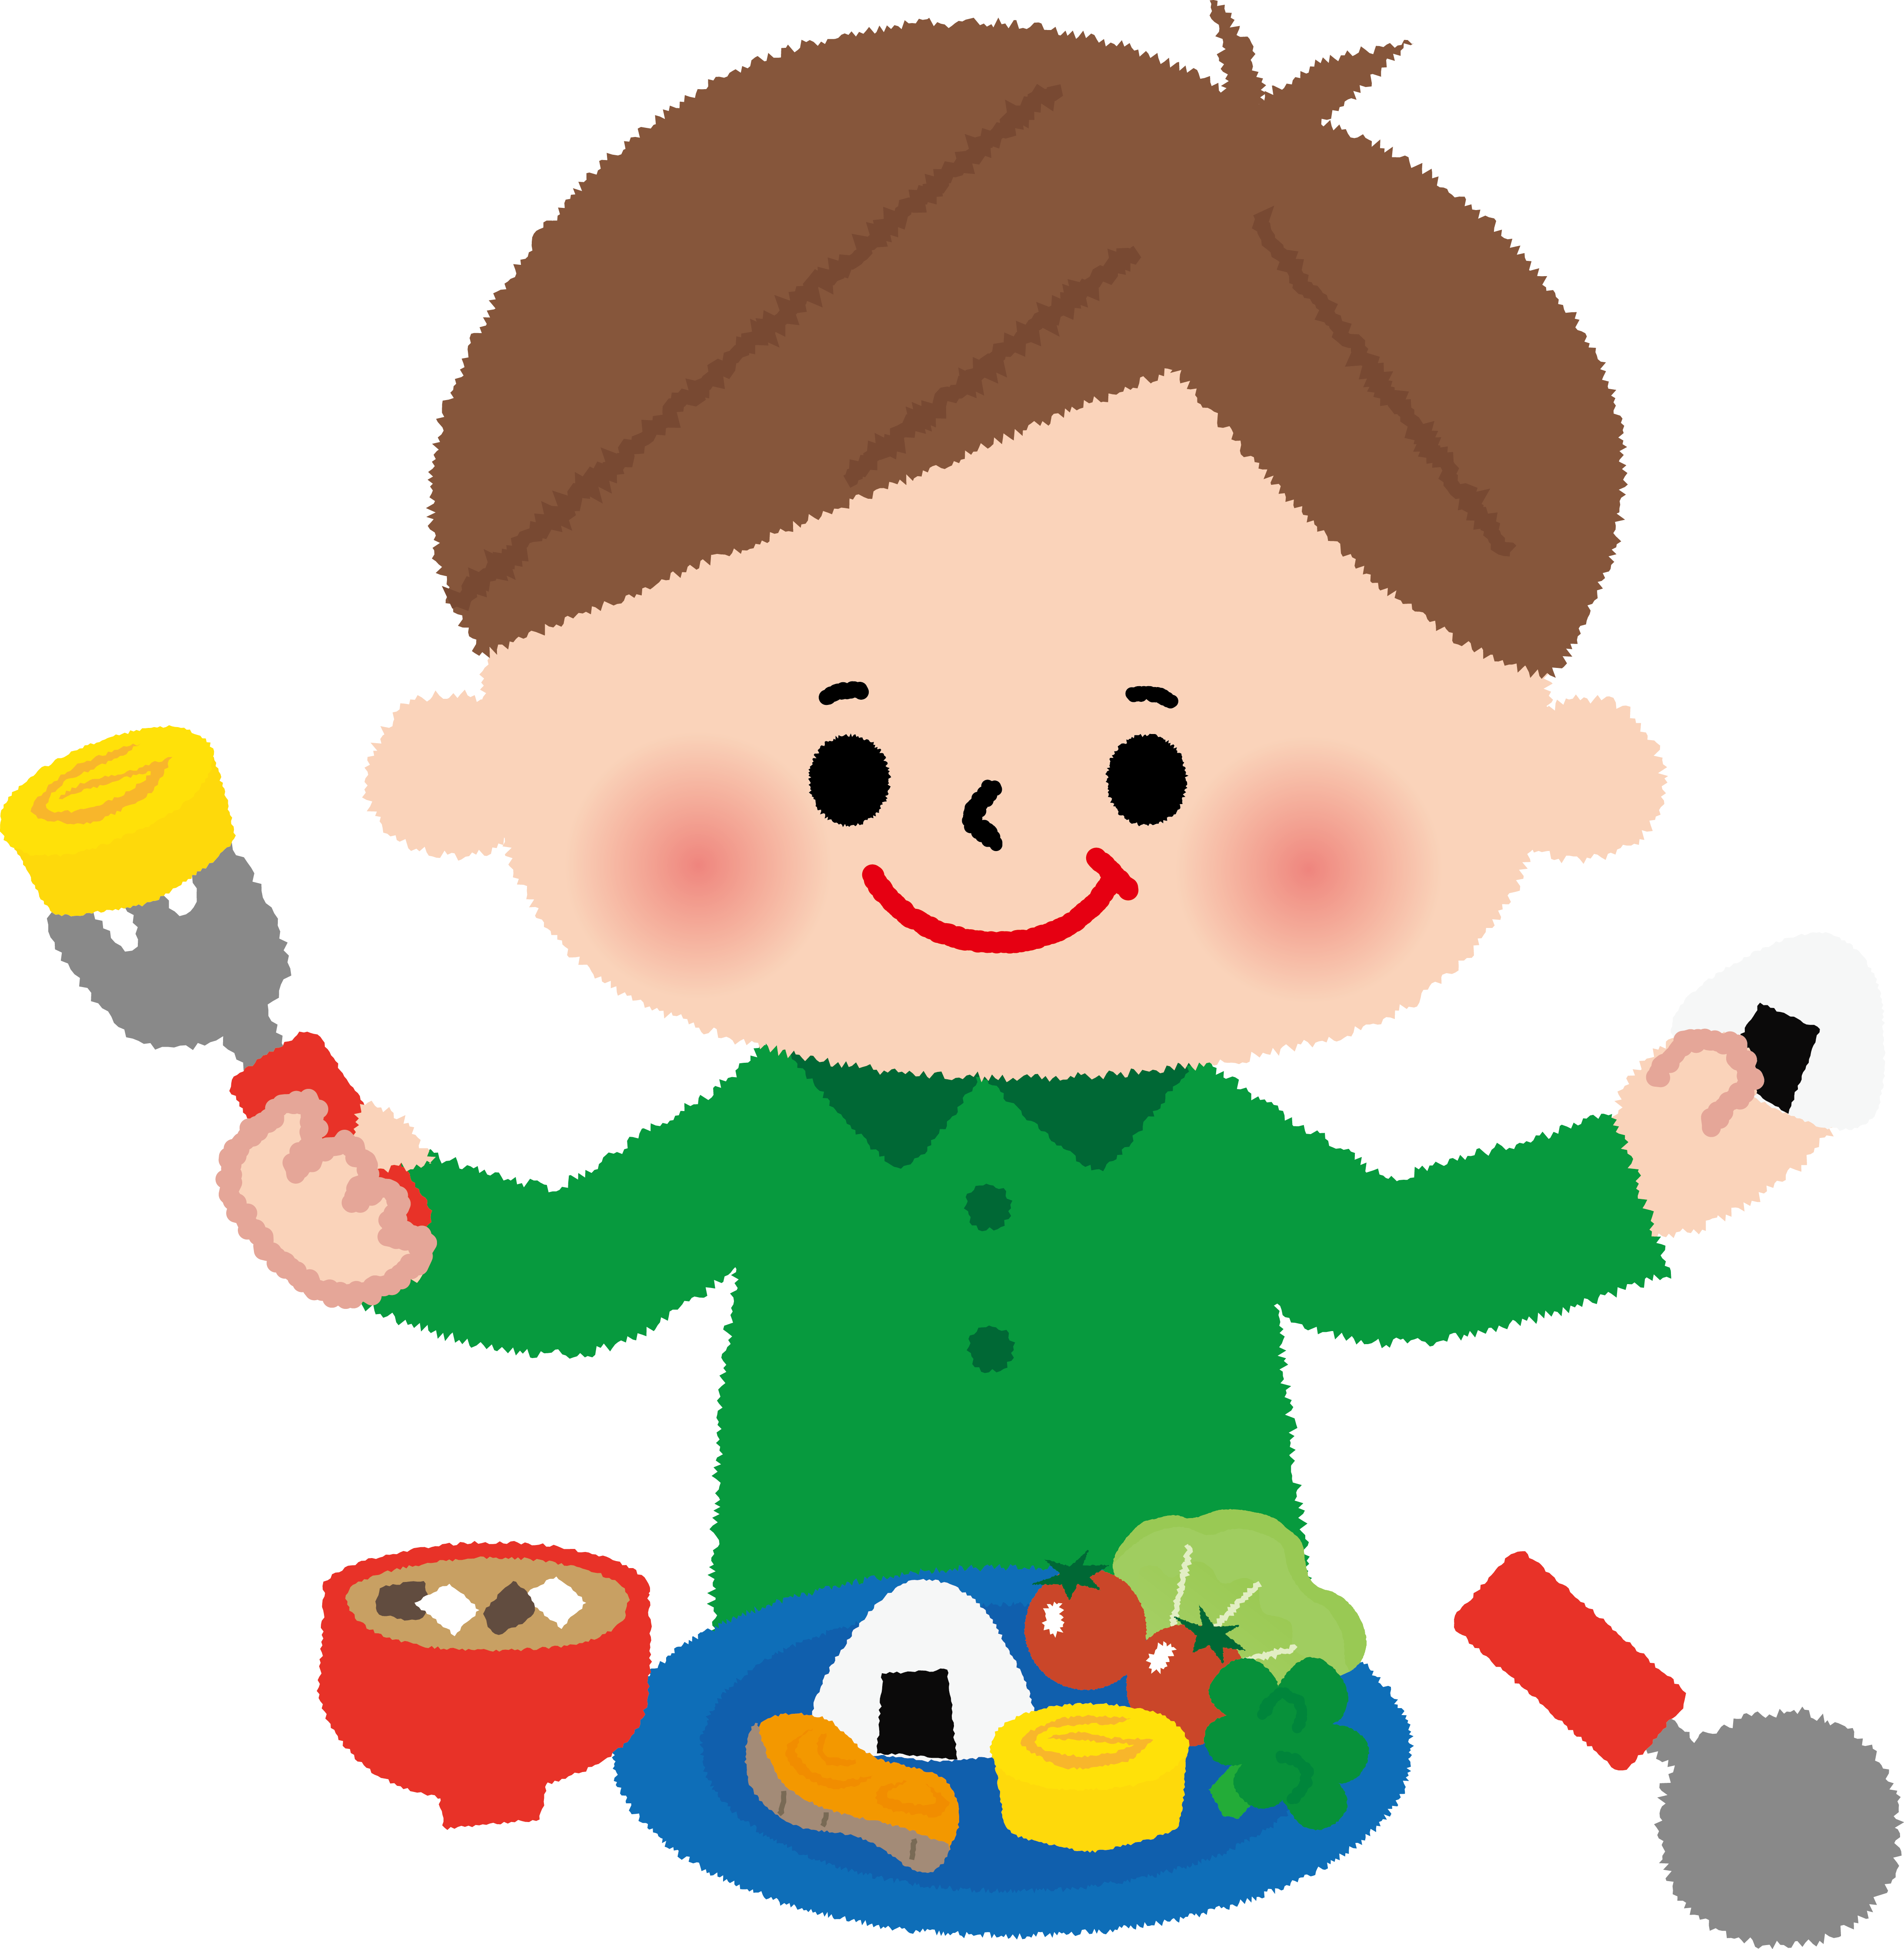 管理栄養士さんから 子どもの食 について教えてもらおう 11月26日 彦根市子どもセンター 滋賀のママがイベント 育児 遊び 学びを発信 シガマンマ ピースマム